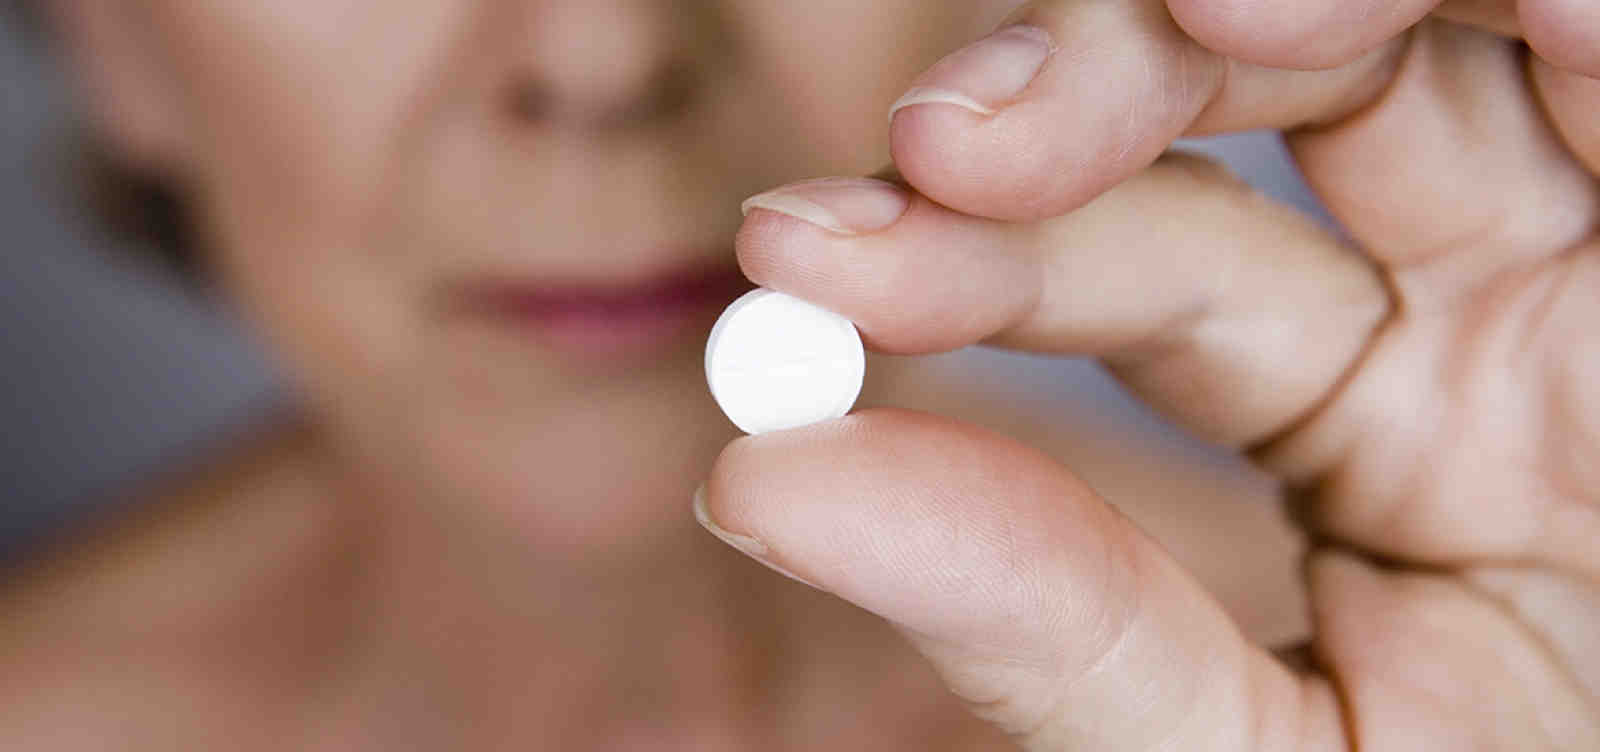 Mifepristona: o que estudos mostram sobre segurança de pílula abortiva no centro de polêmica nos EUA